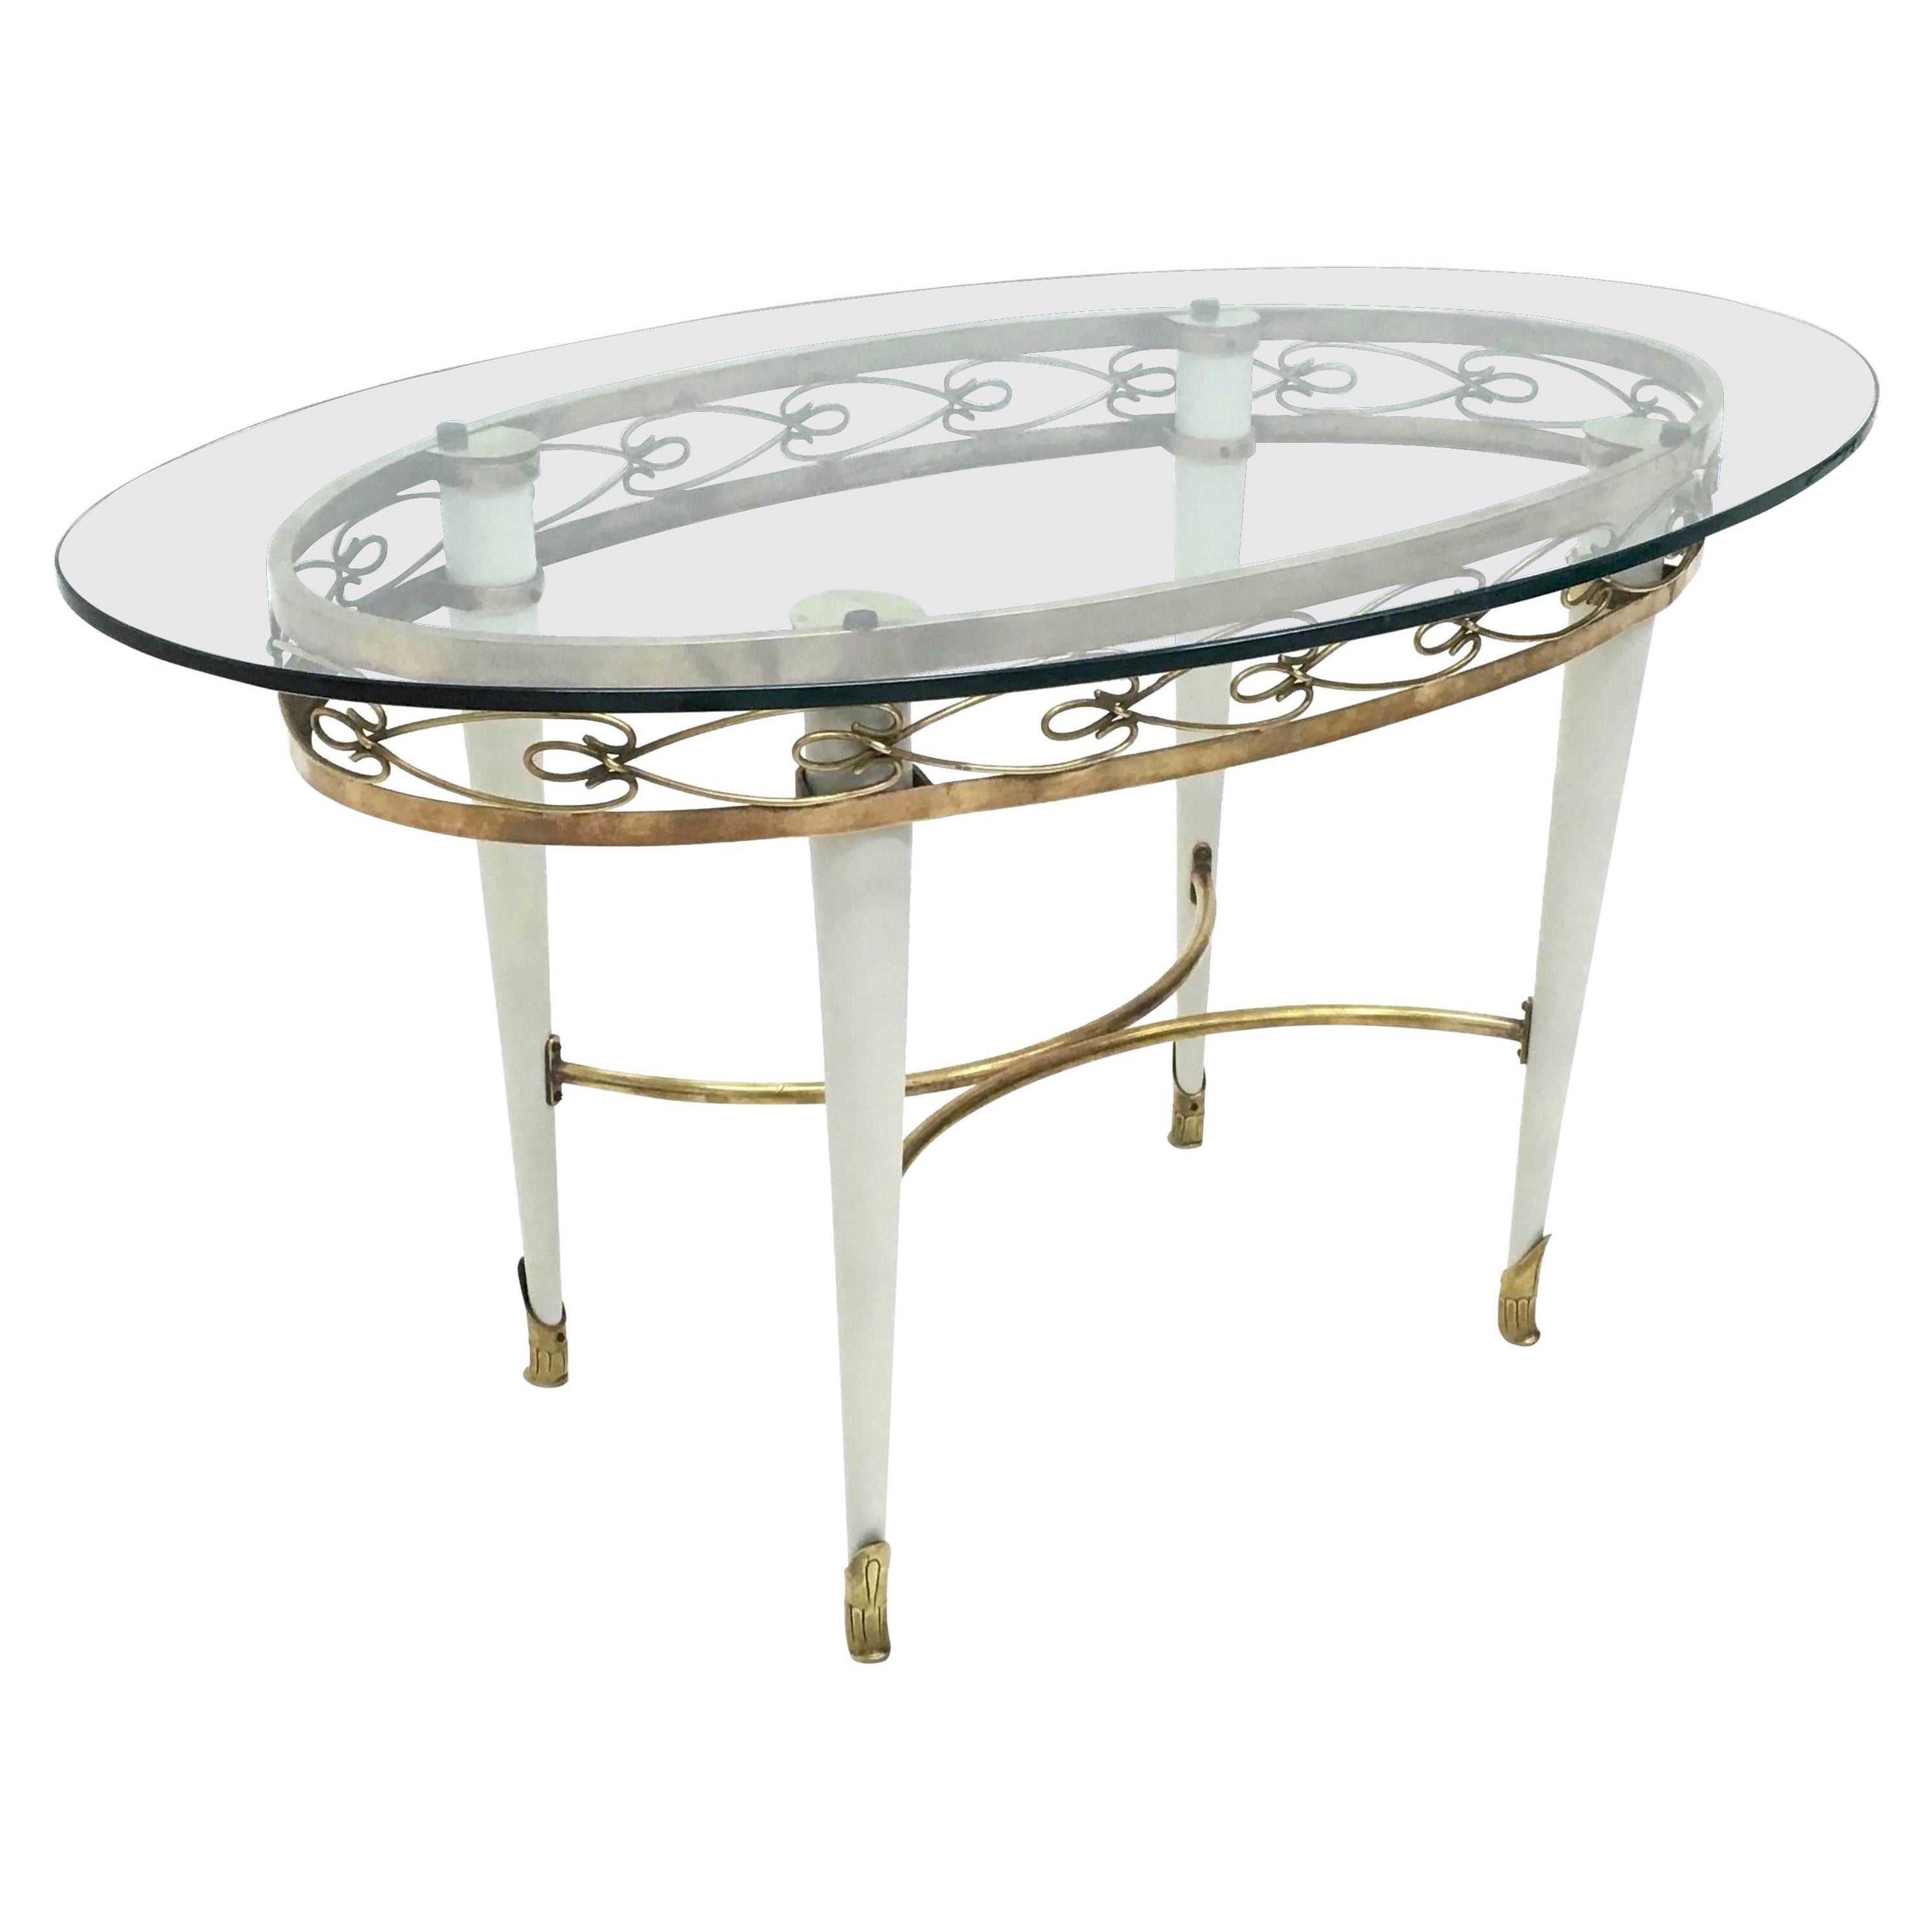 Table basse ovale dans le style de Pierluigi Colli, Italie